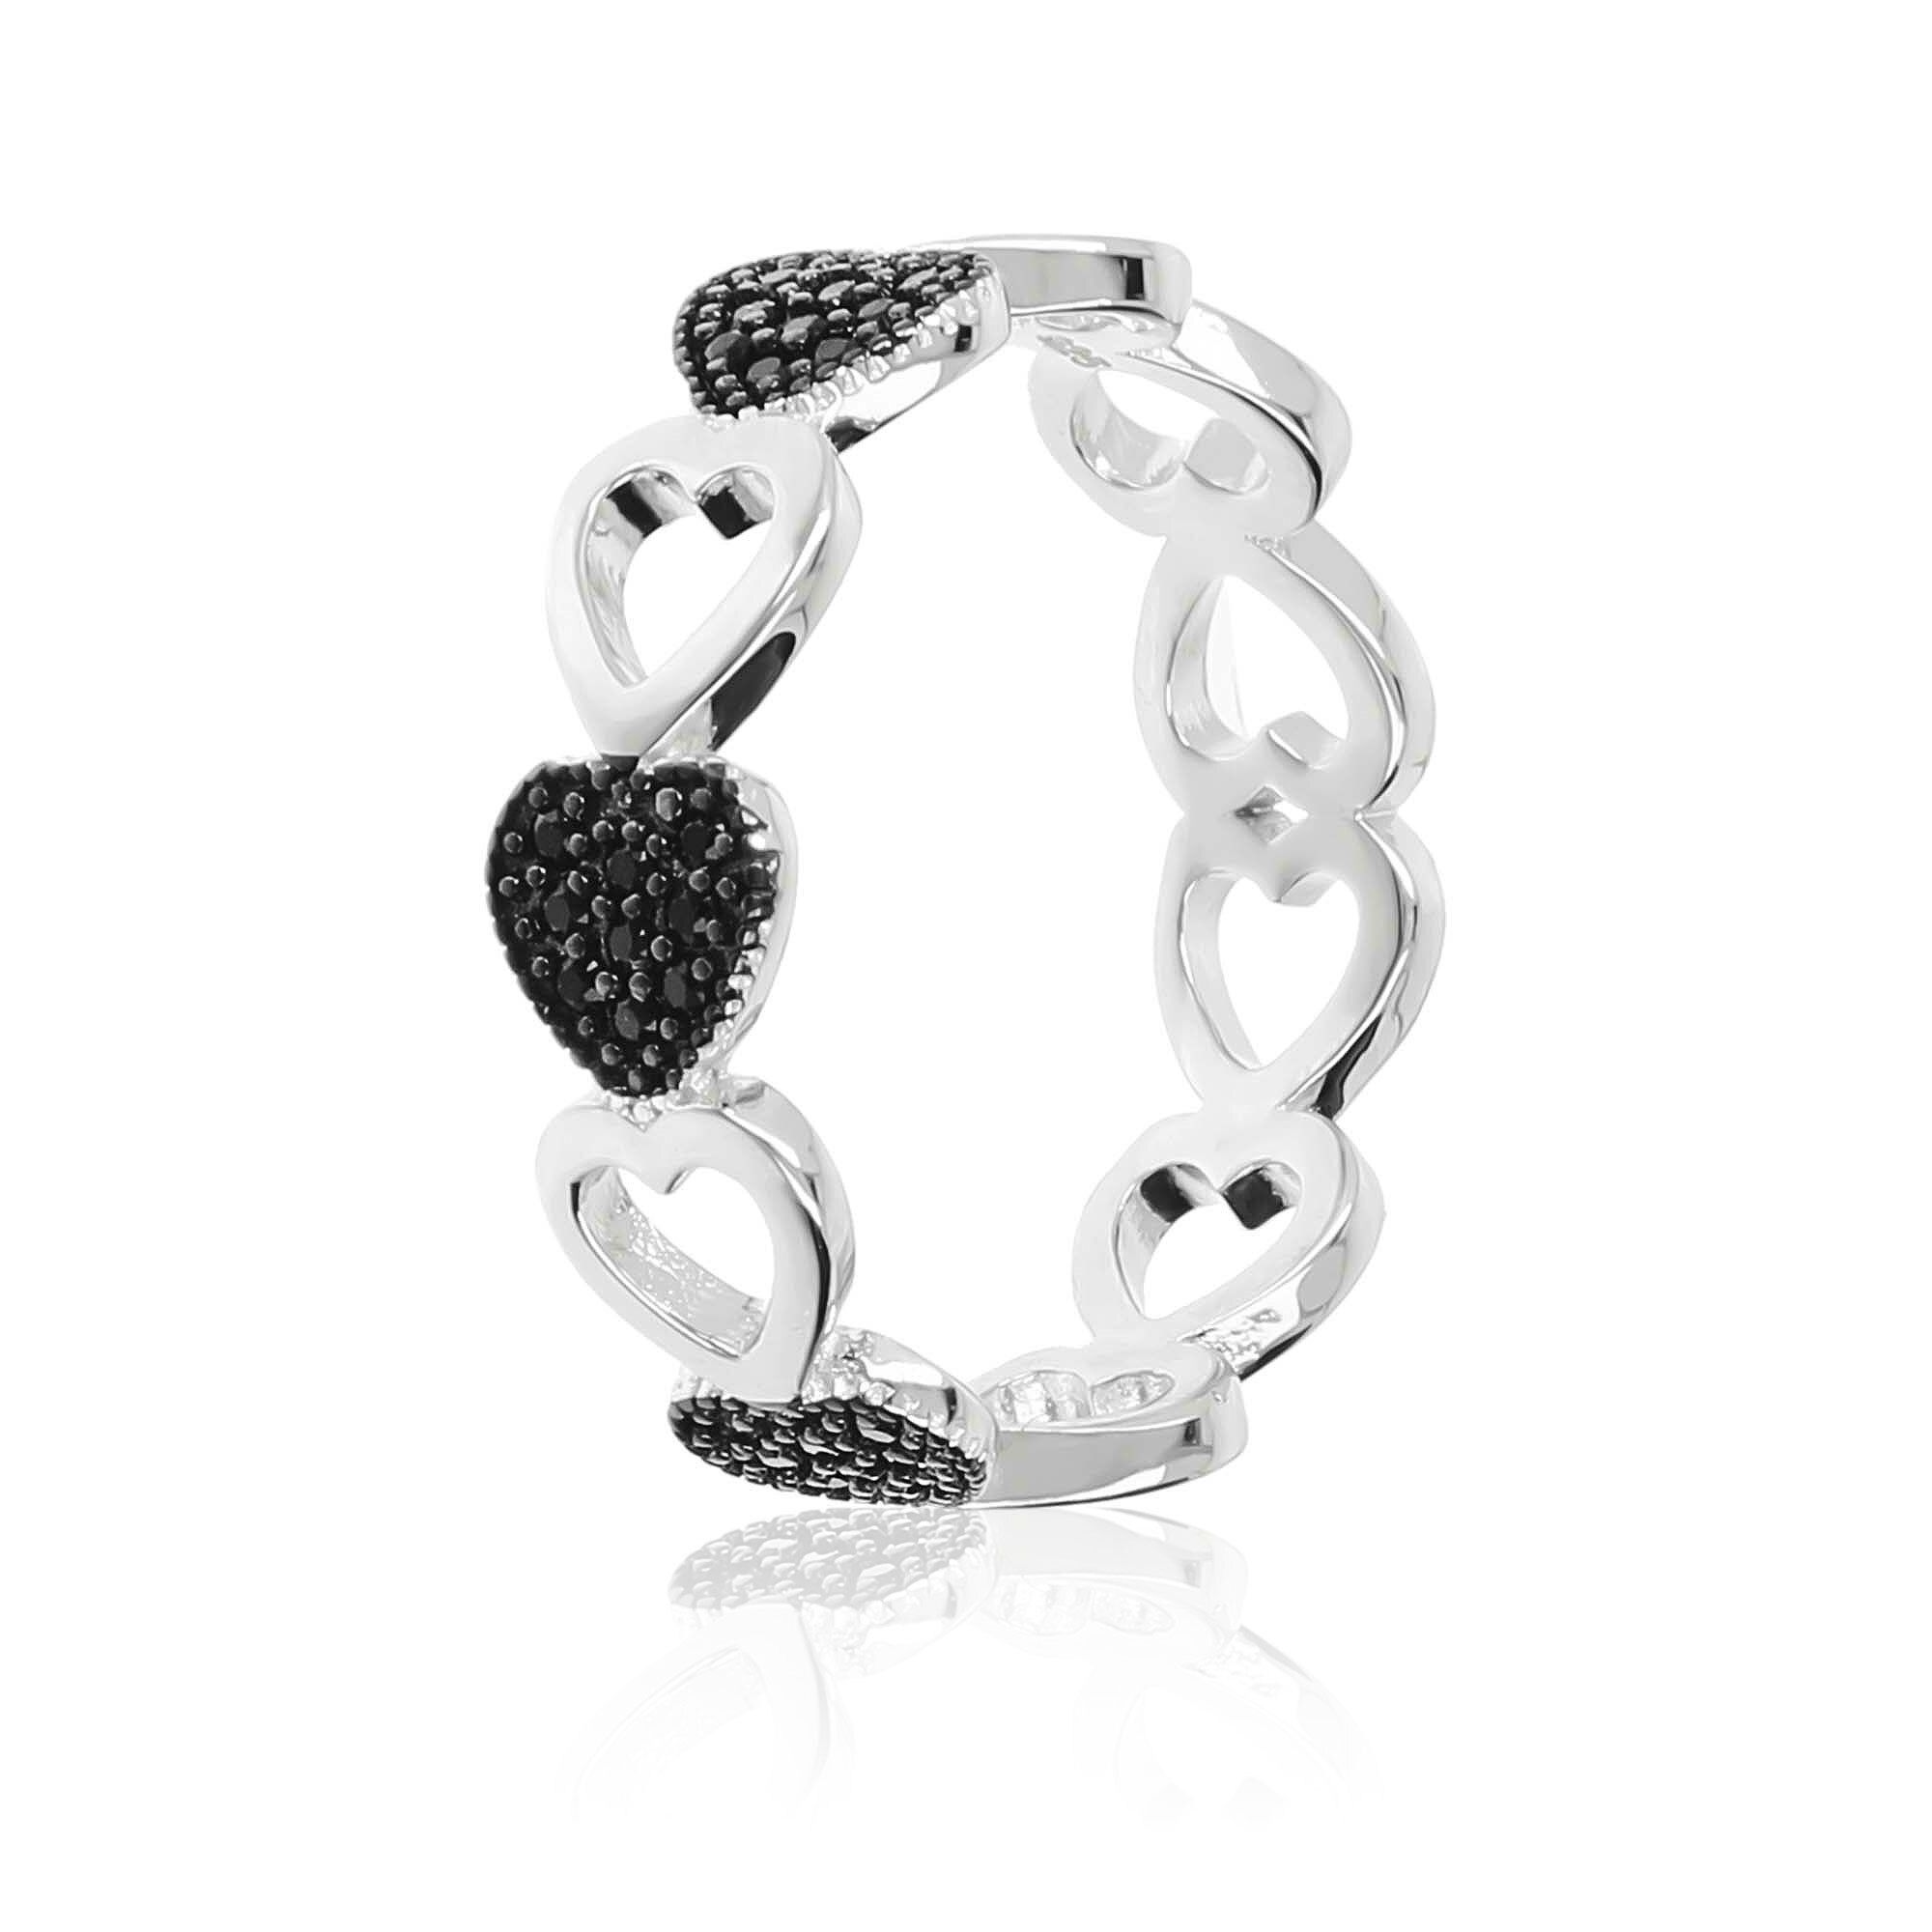 Anello argento 925 design a cuore con spinello nero